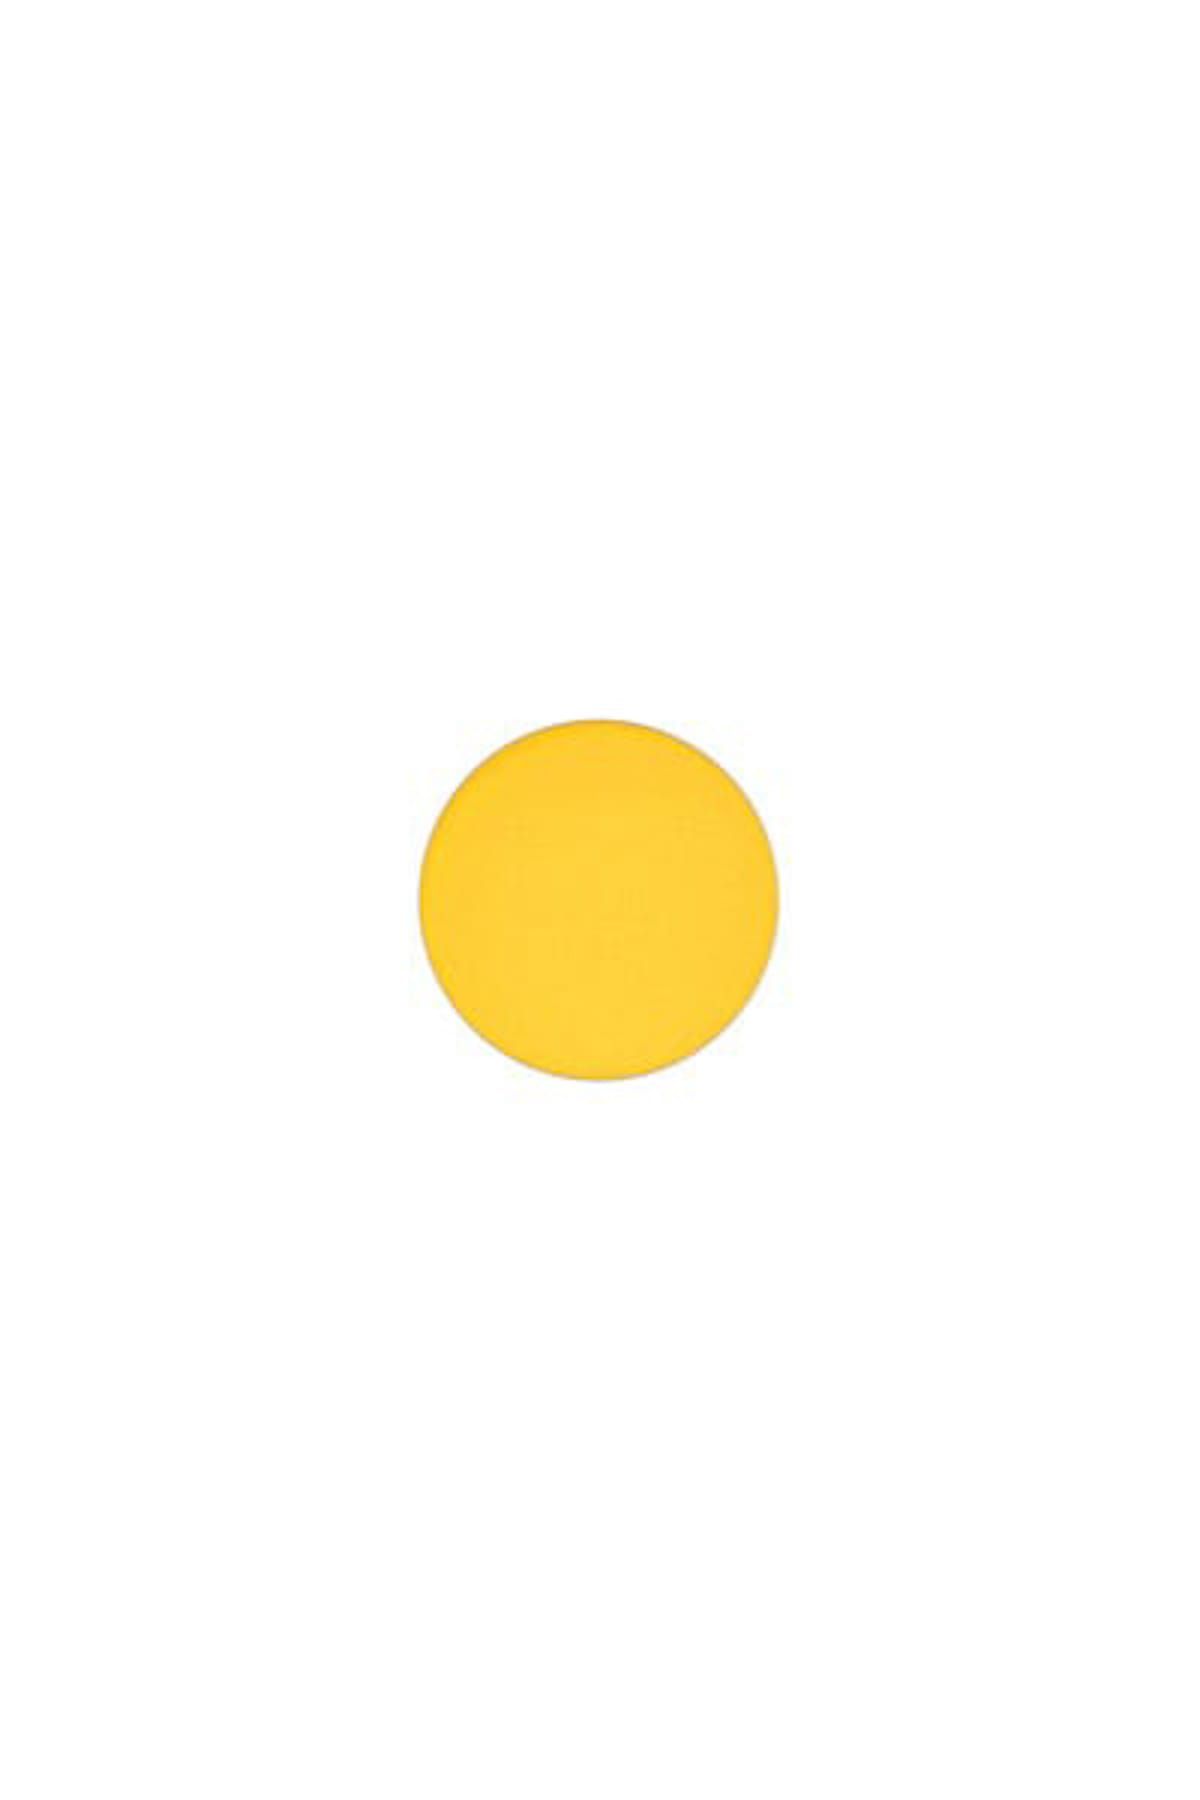 Mac Göz Farı - Refill Far Chrome Yellow 1.5 g 773602961405